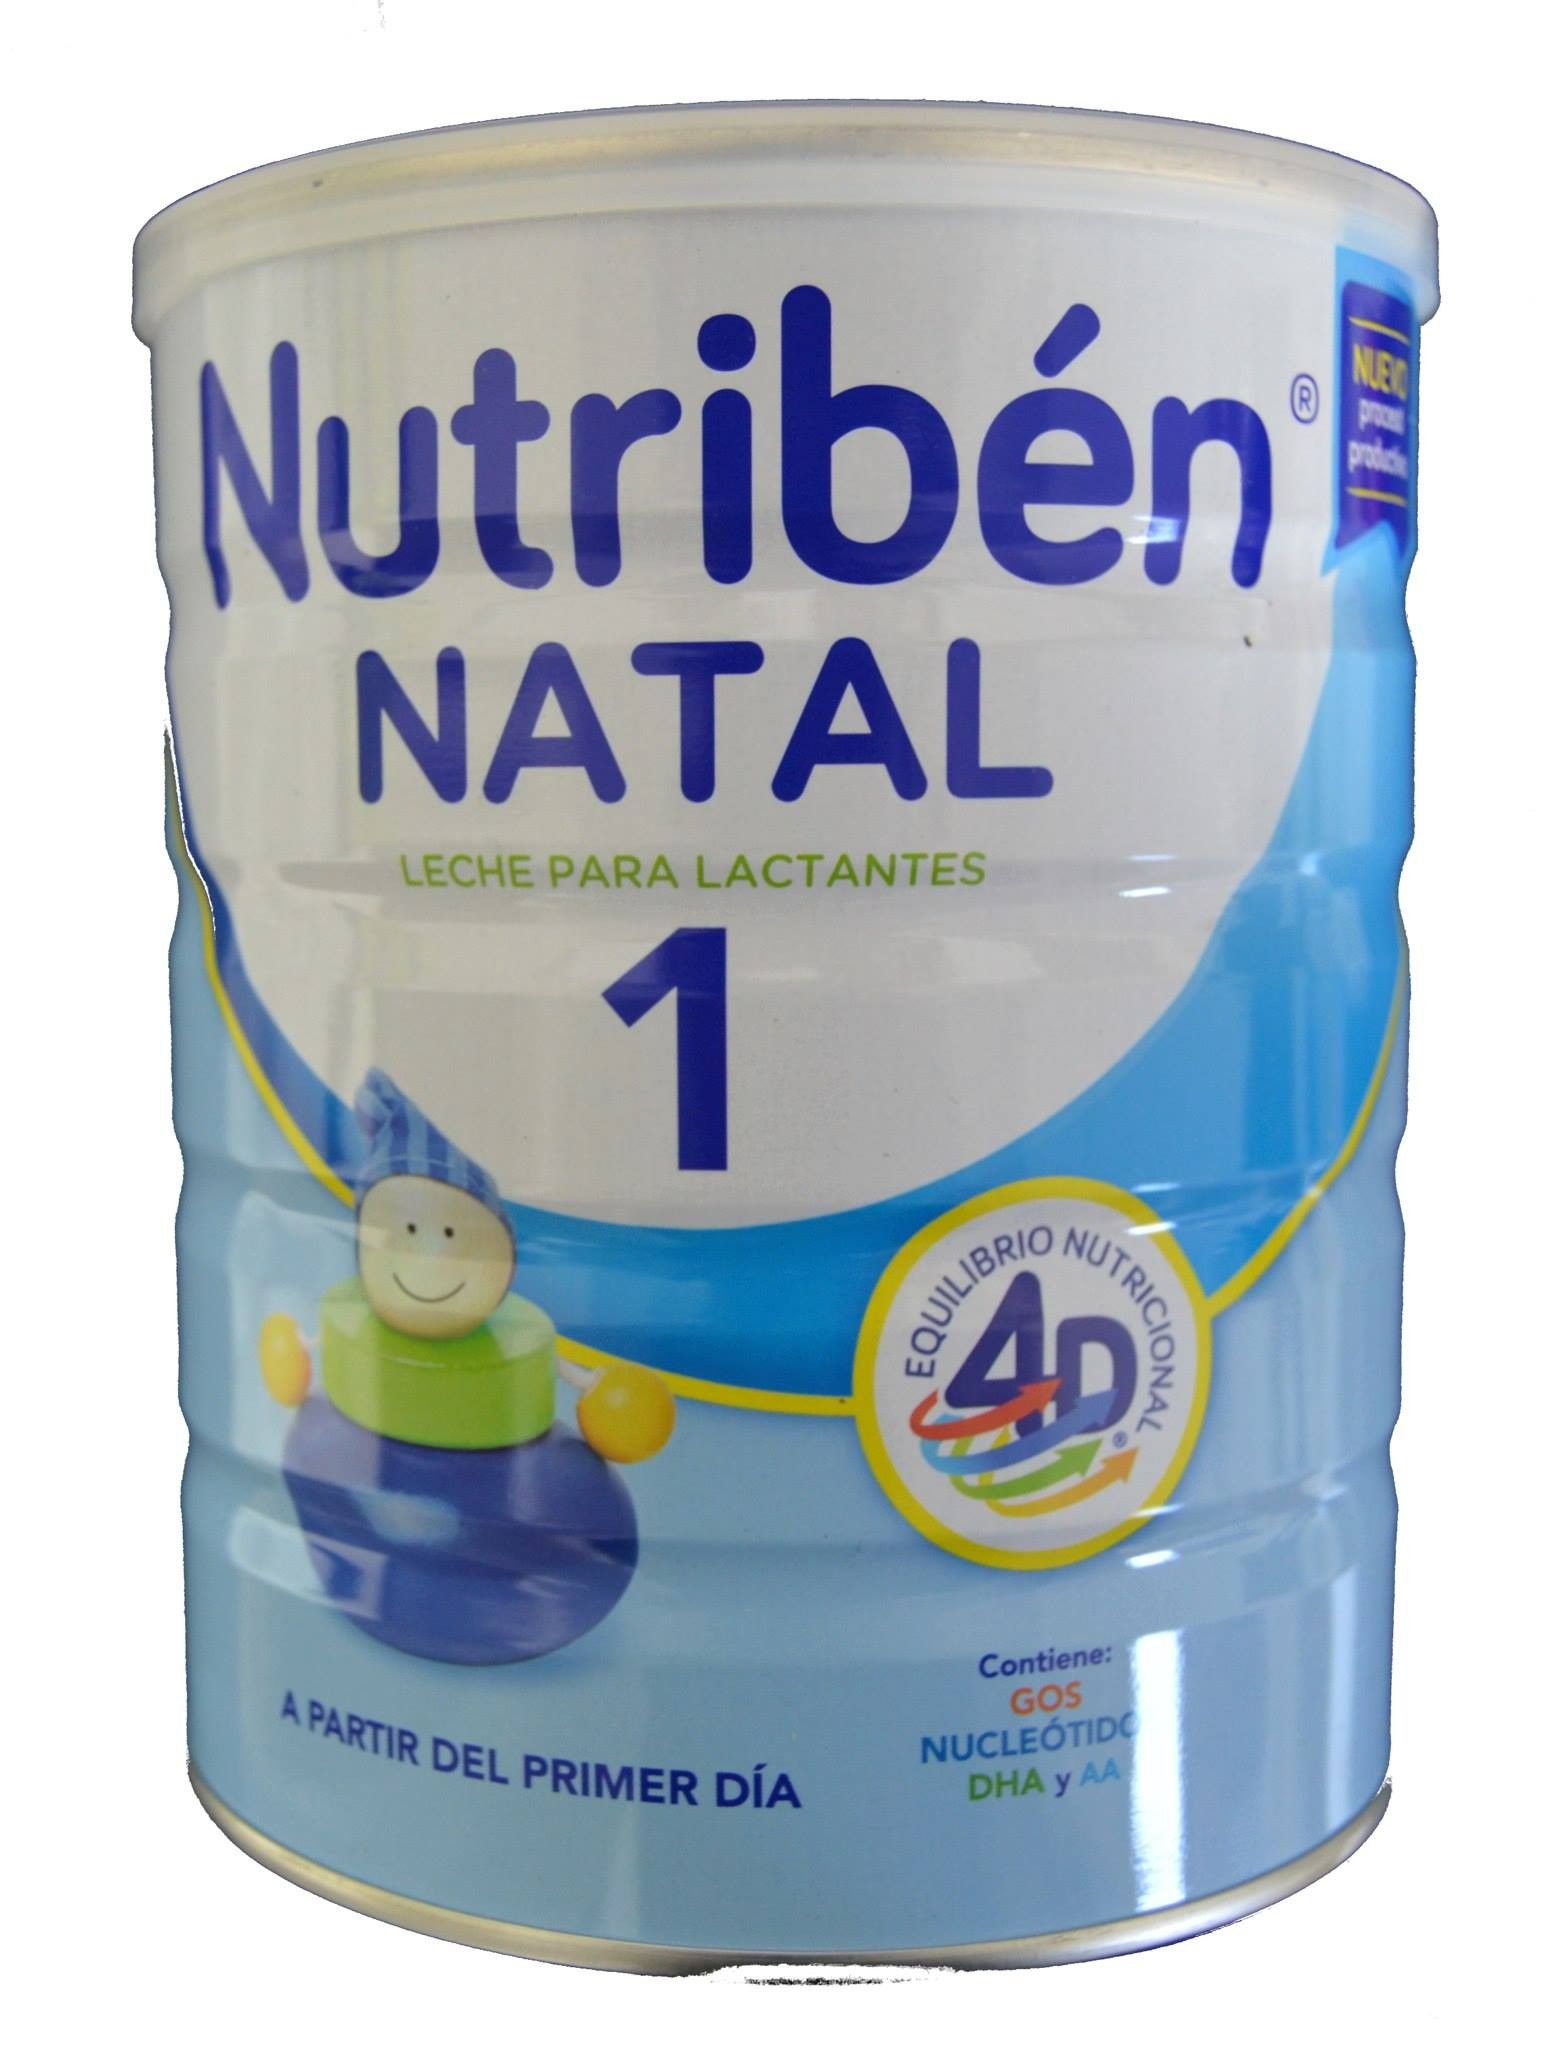 Leche Nutriben Confort 1 Envase 800g - La Farmacia de Alba